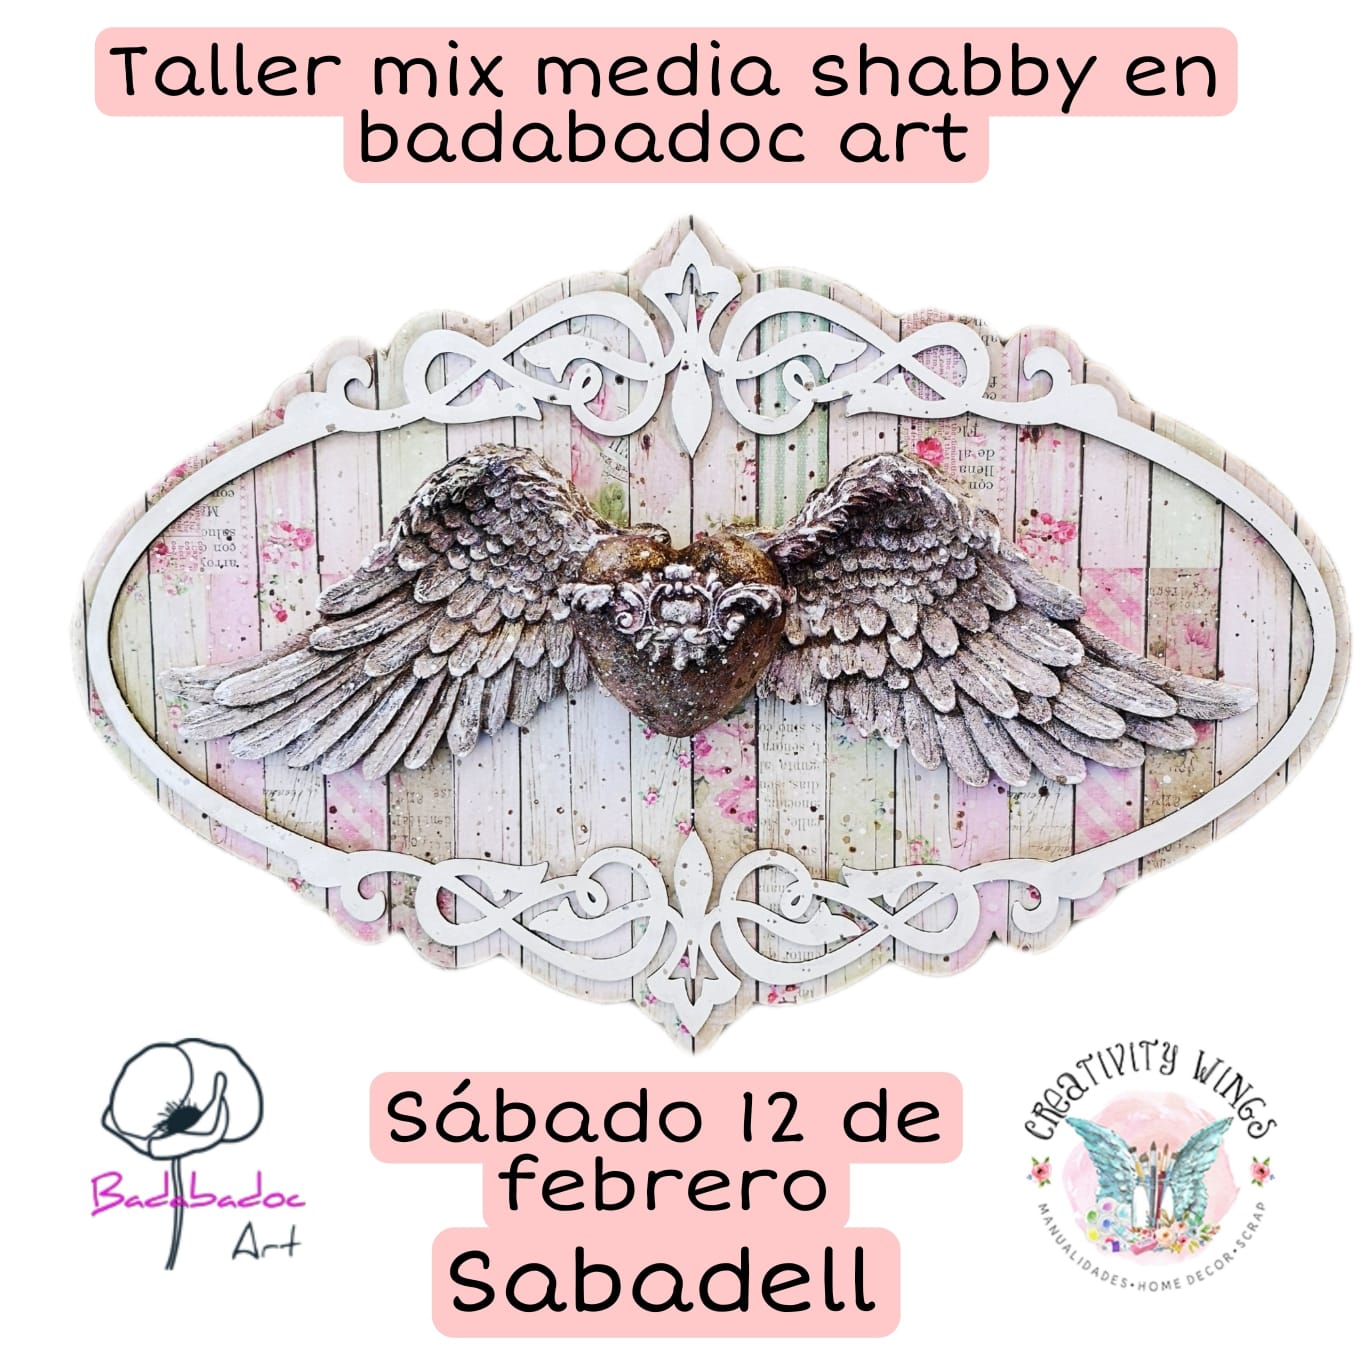 Taller manualidades mixed media Sabadell